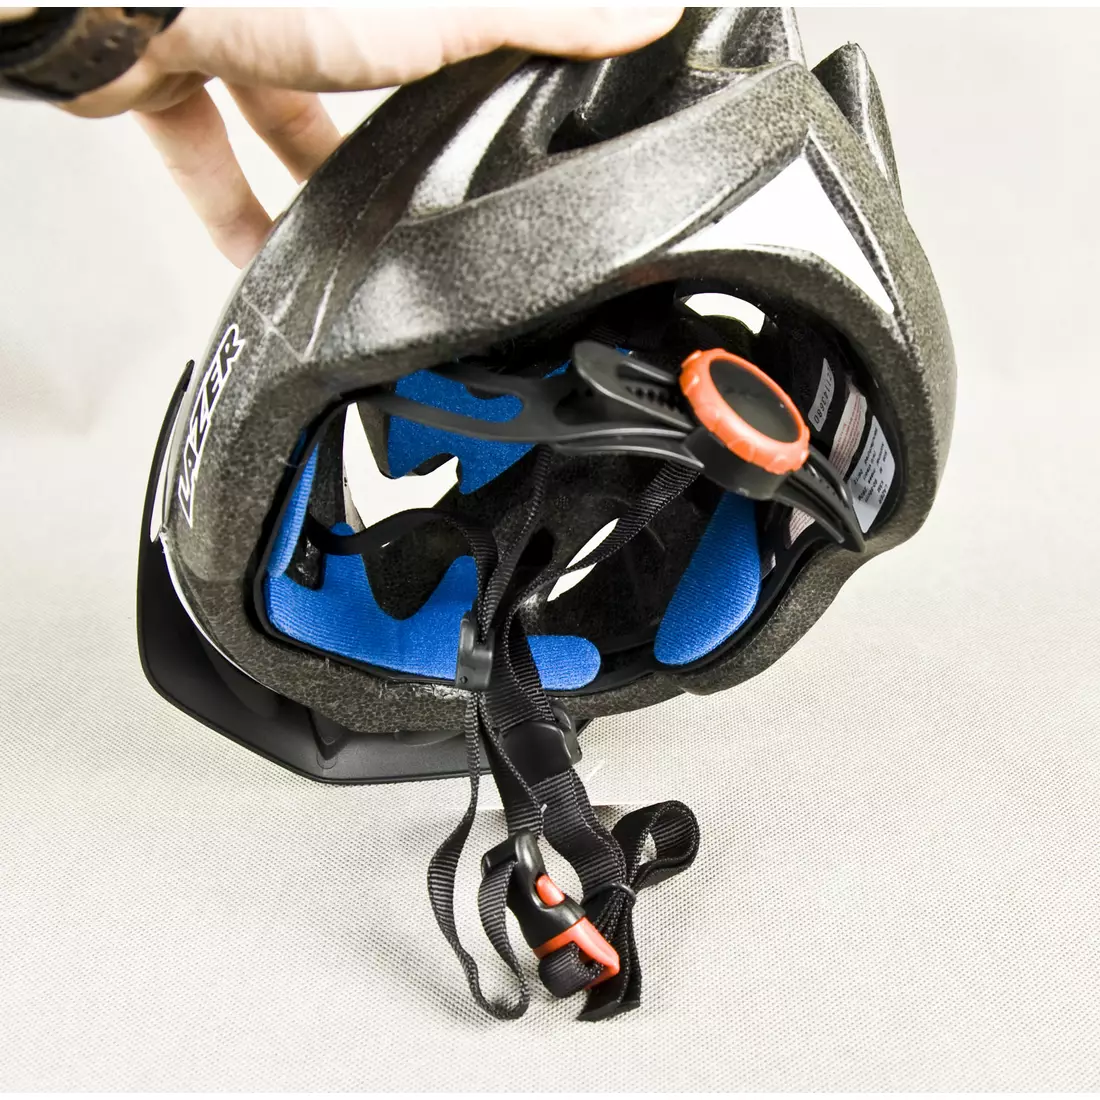 LAZER X3M cyklistická helma MTB , šedo-stříbrná